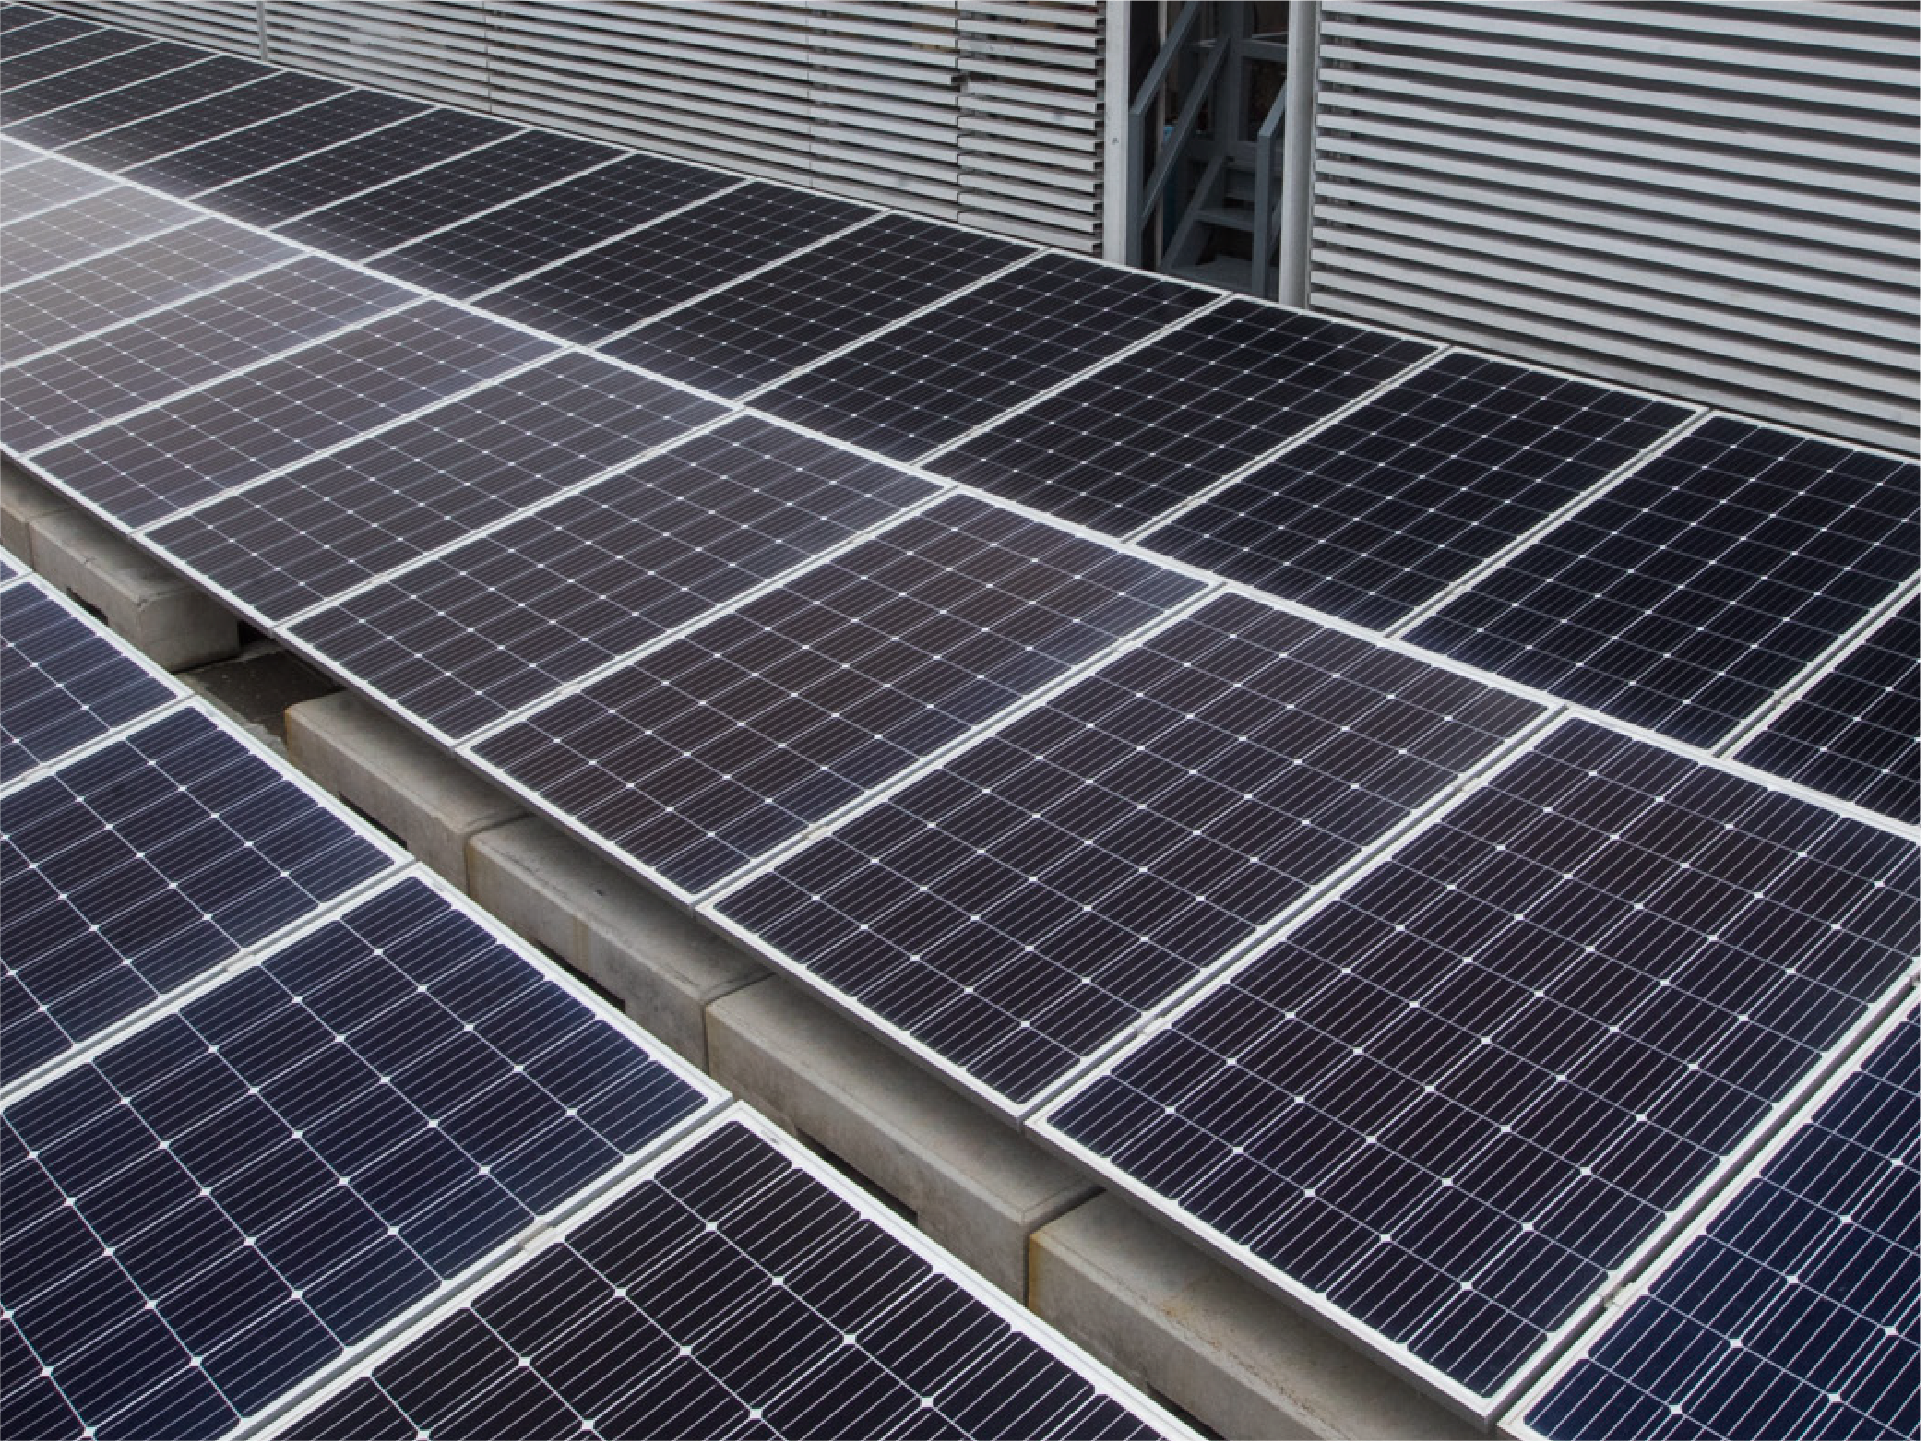 超級一號貨站天台設置面積達1,600平方米的太陽能板